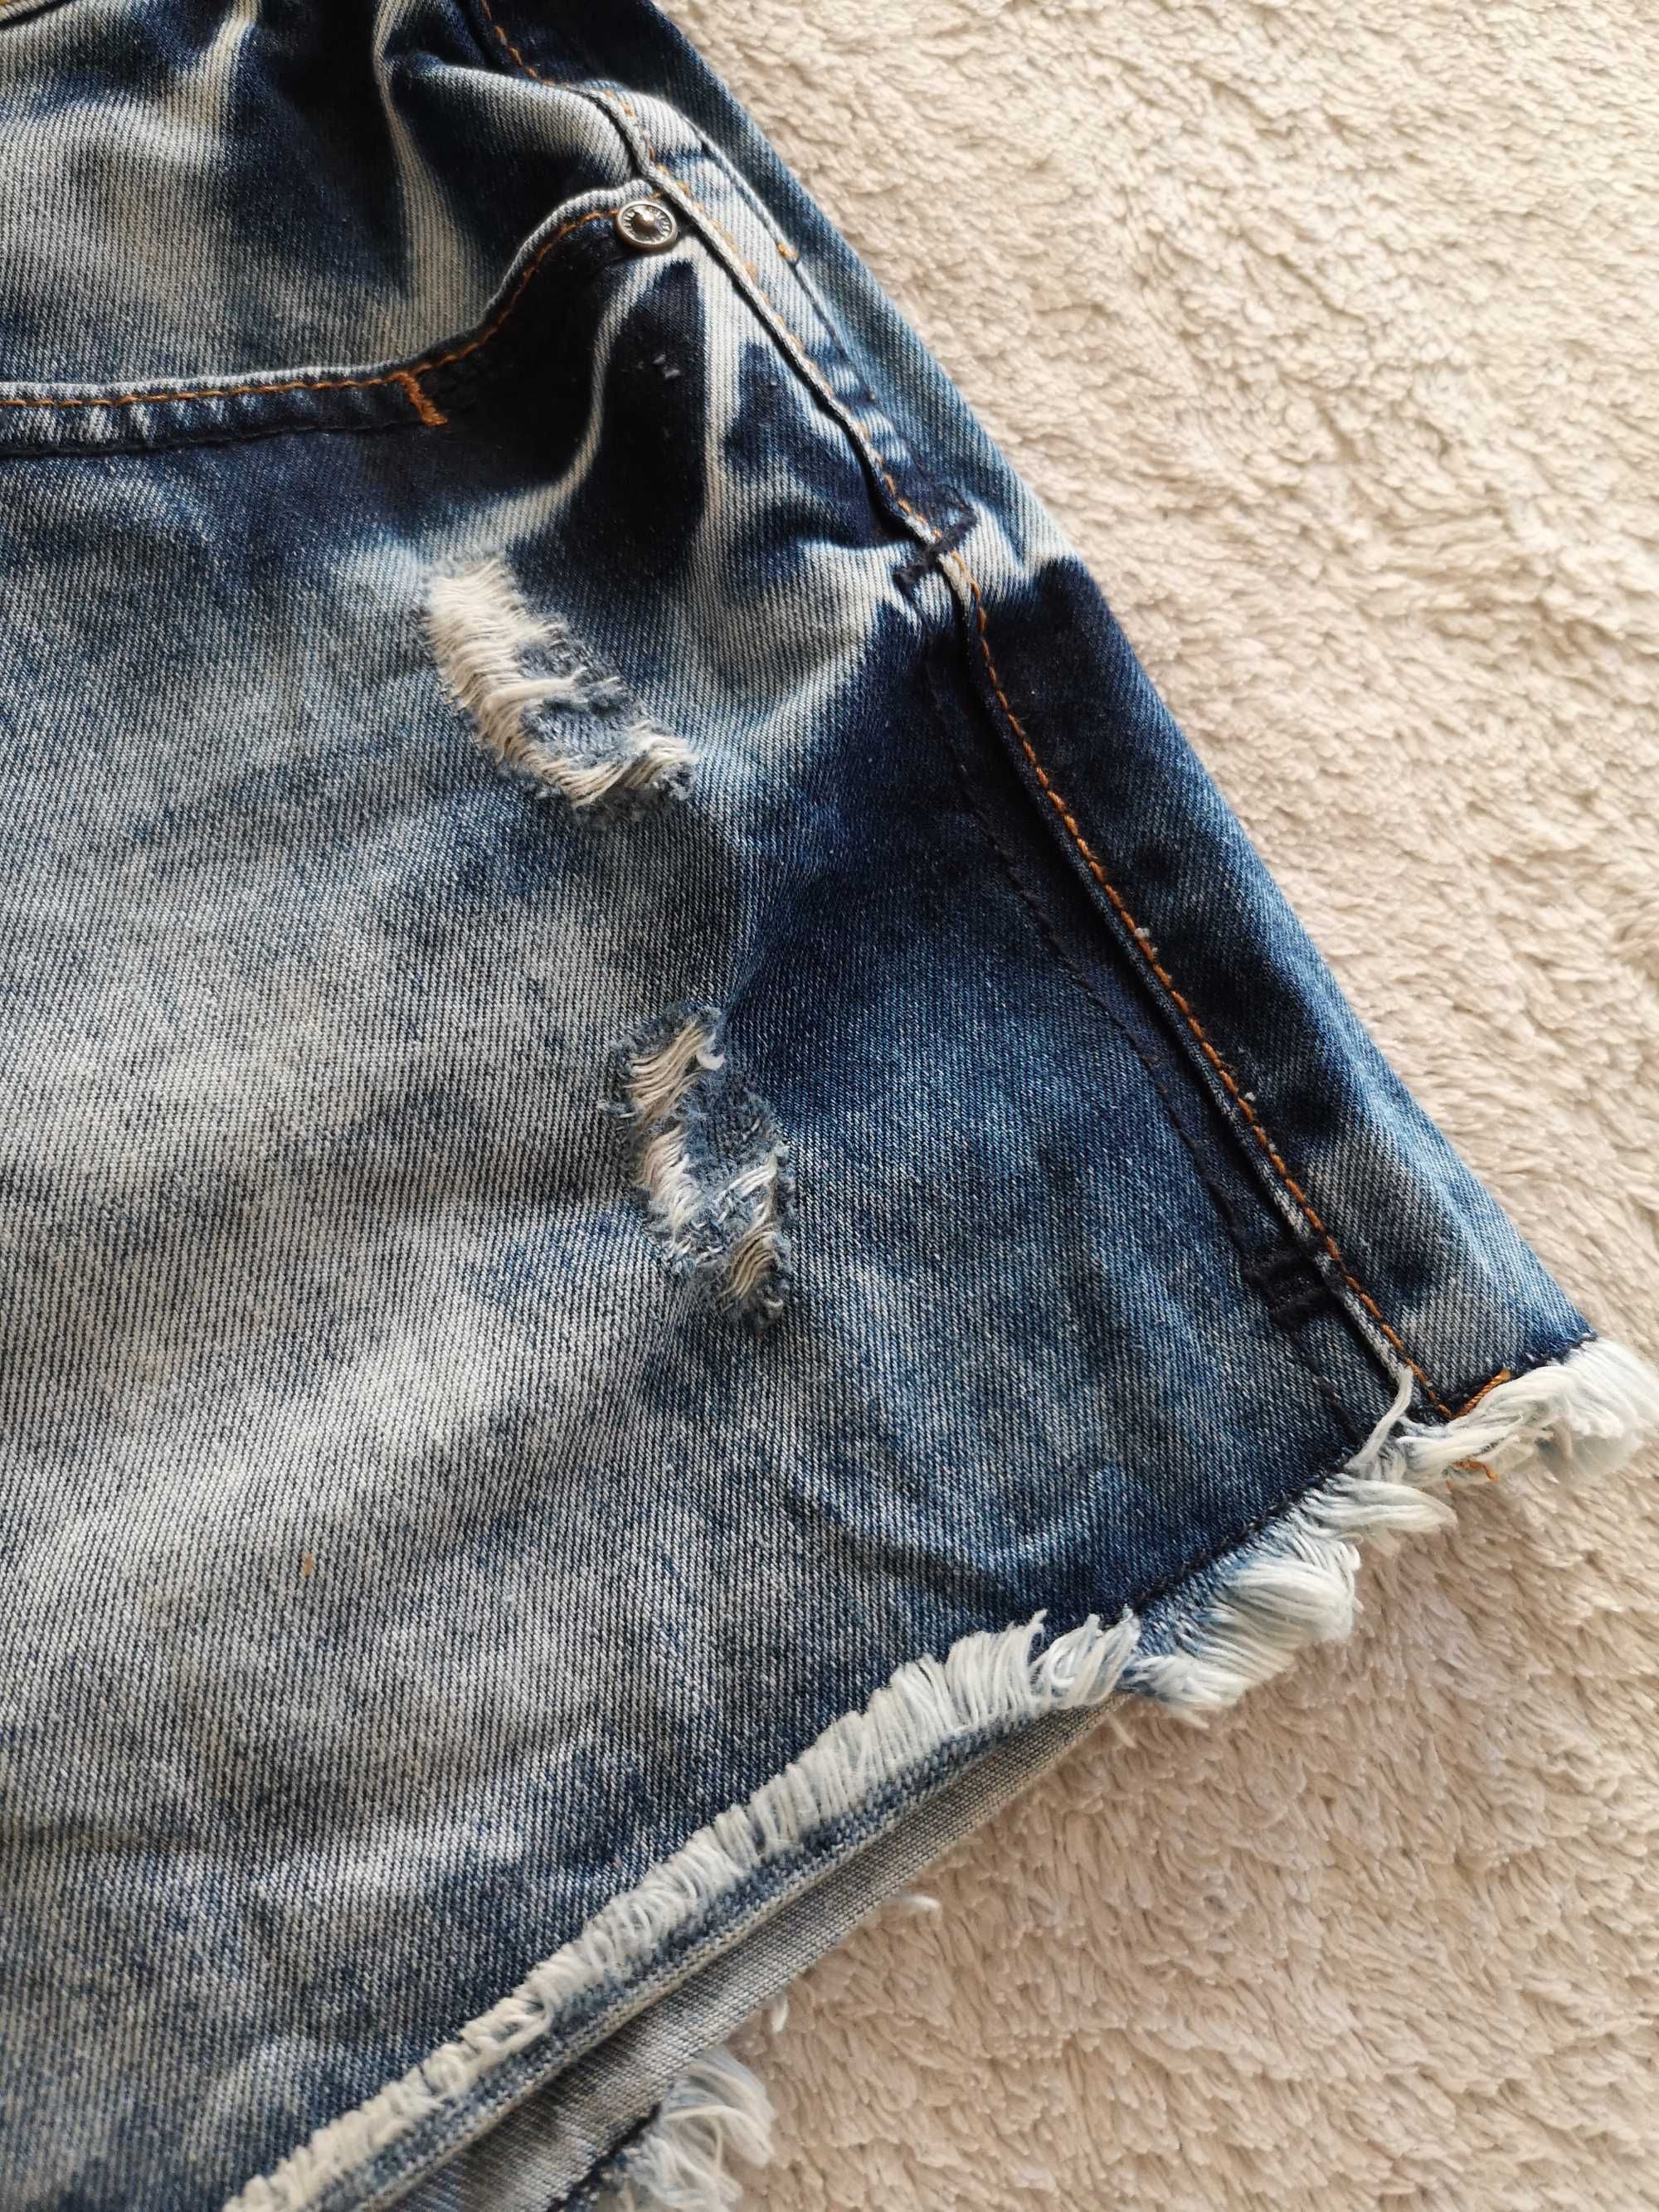 Strzępione jeansowe krótkie spodenki szorty dziury New Look 40 j nowe